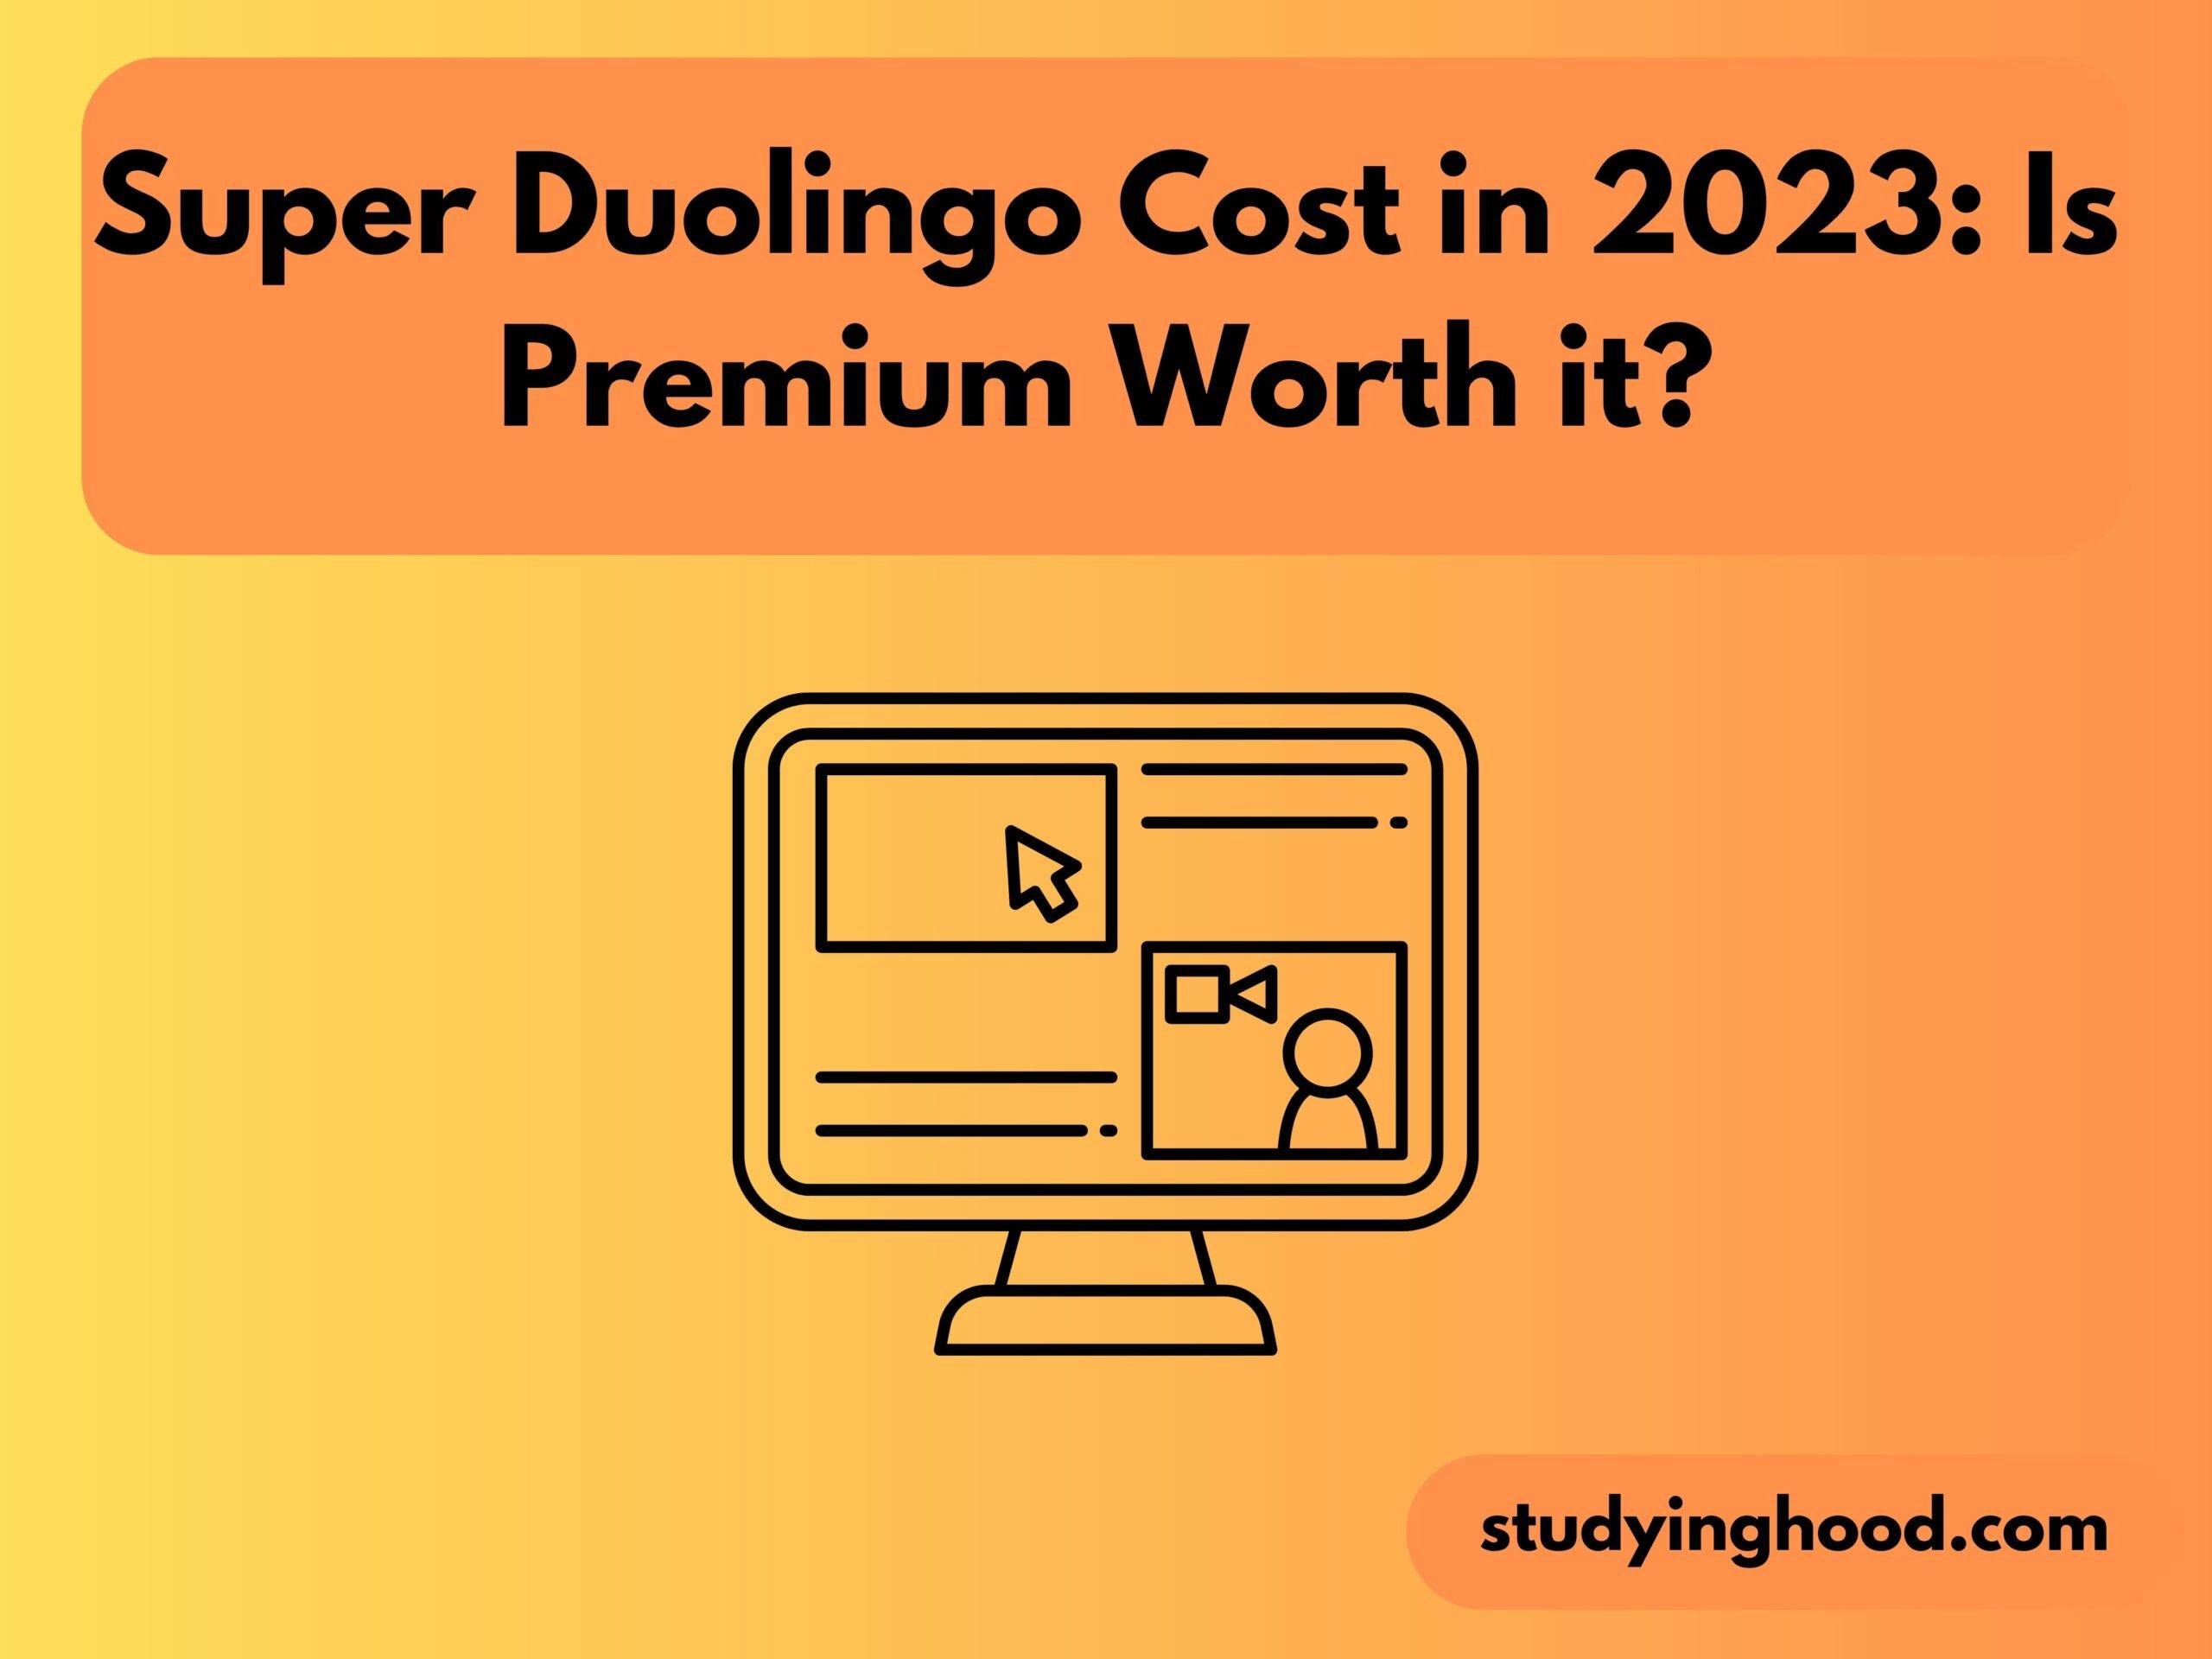 Super Duolingo Cost in 2023: Is Premium Worth it?